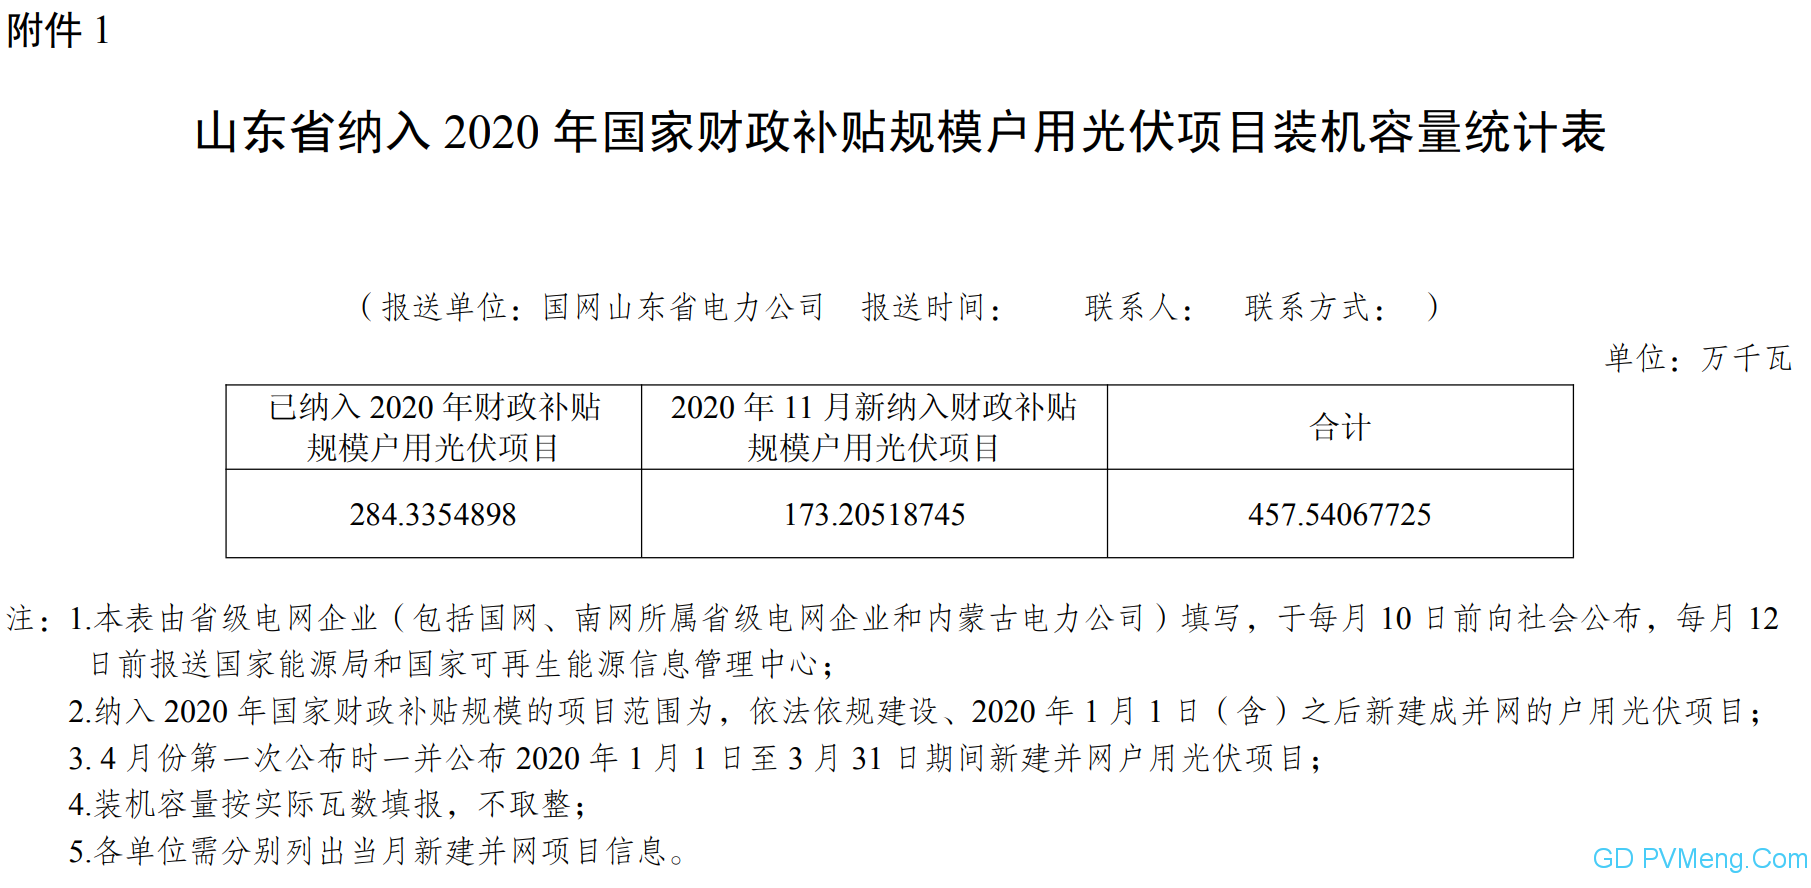 【爆增新纳入1.732GW】11月份山东省纳入2020年国家财政补贴规模户用光伏项目 20201209